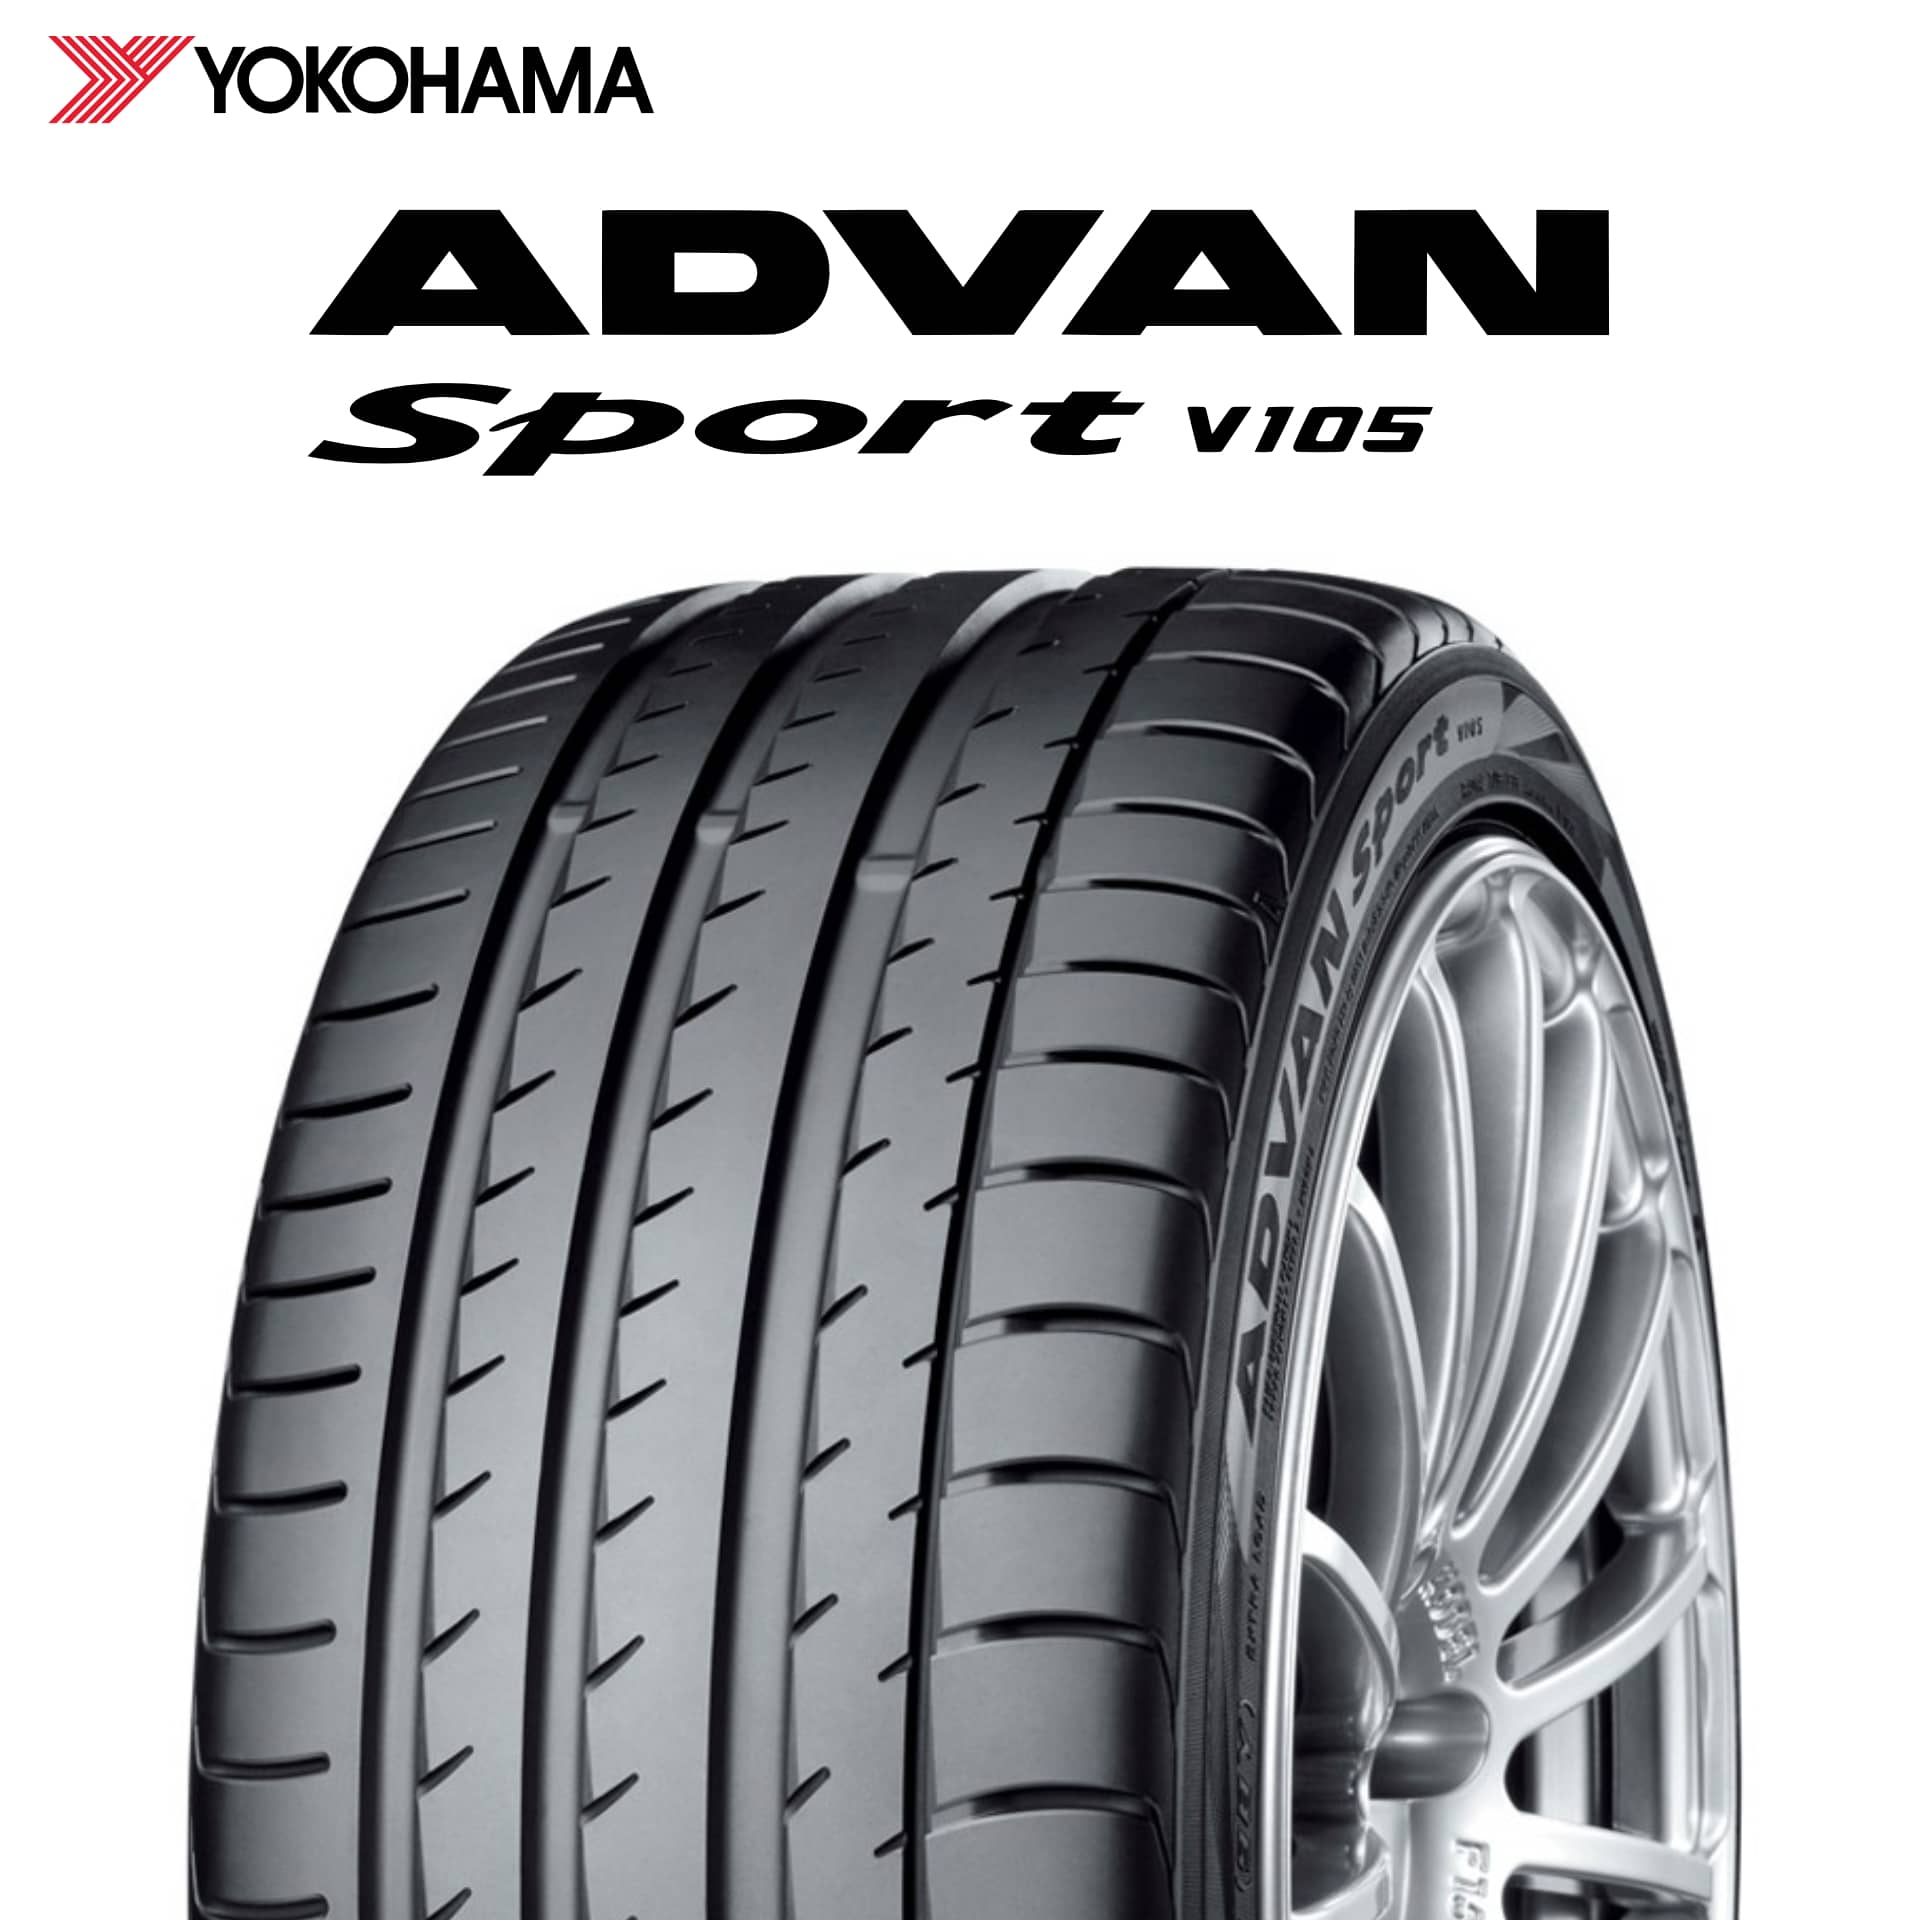 21年製 日本製 205/55R16 91V MO ヨコハマタイヤ ADVAN Sport V105 (アドバン スポーツV105) メルセデスベンツ承認タイヤ 16インチ 新品